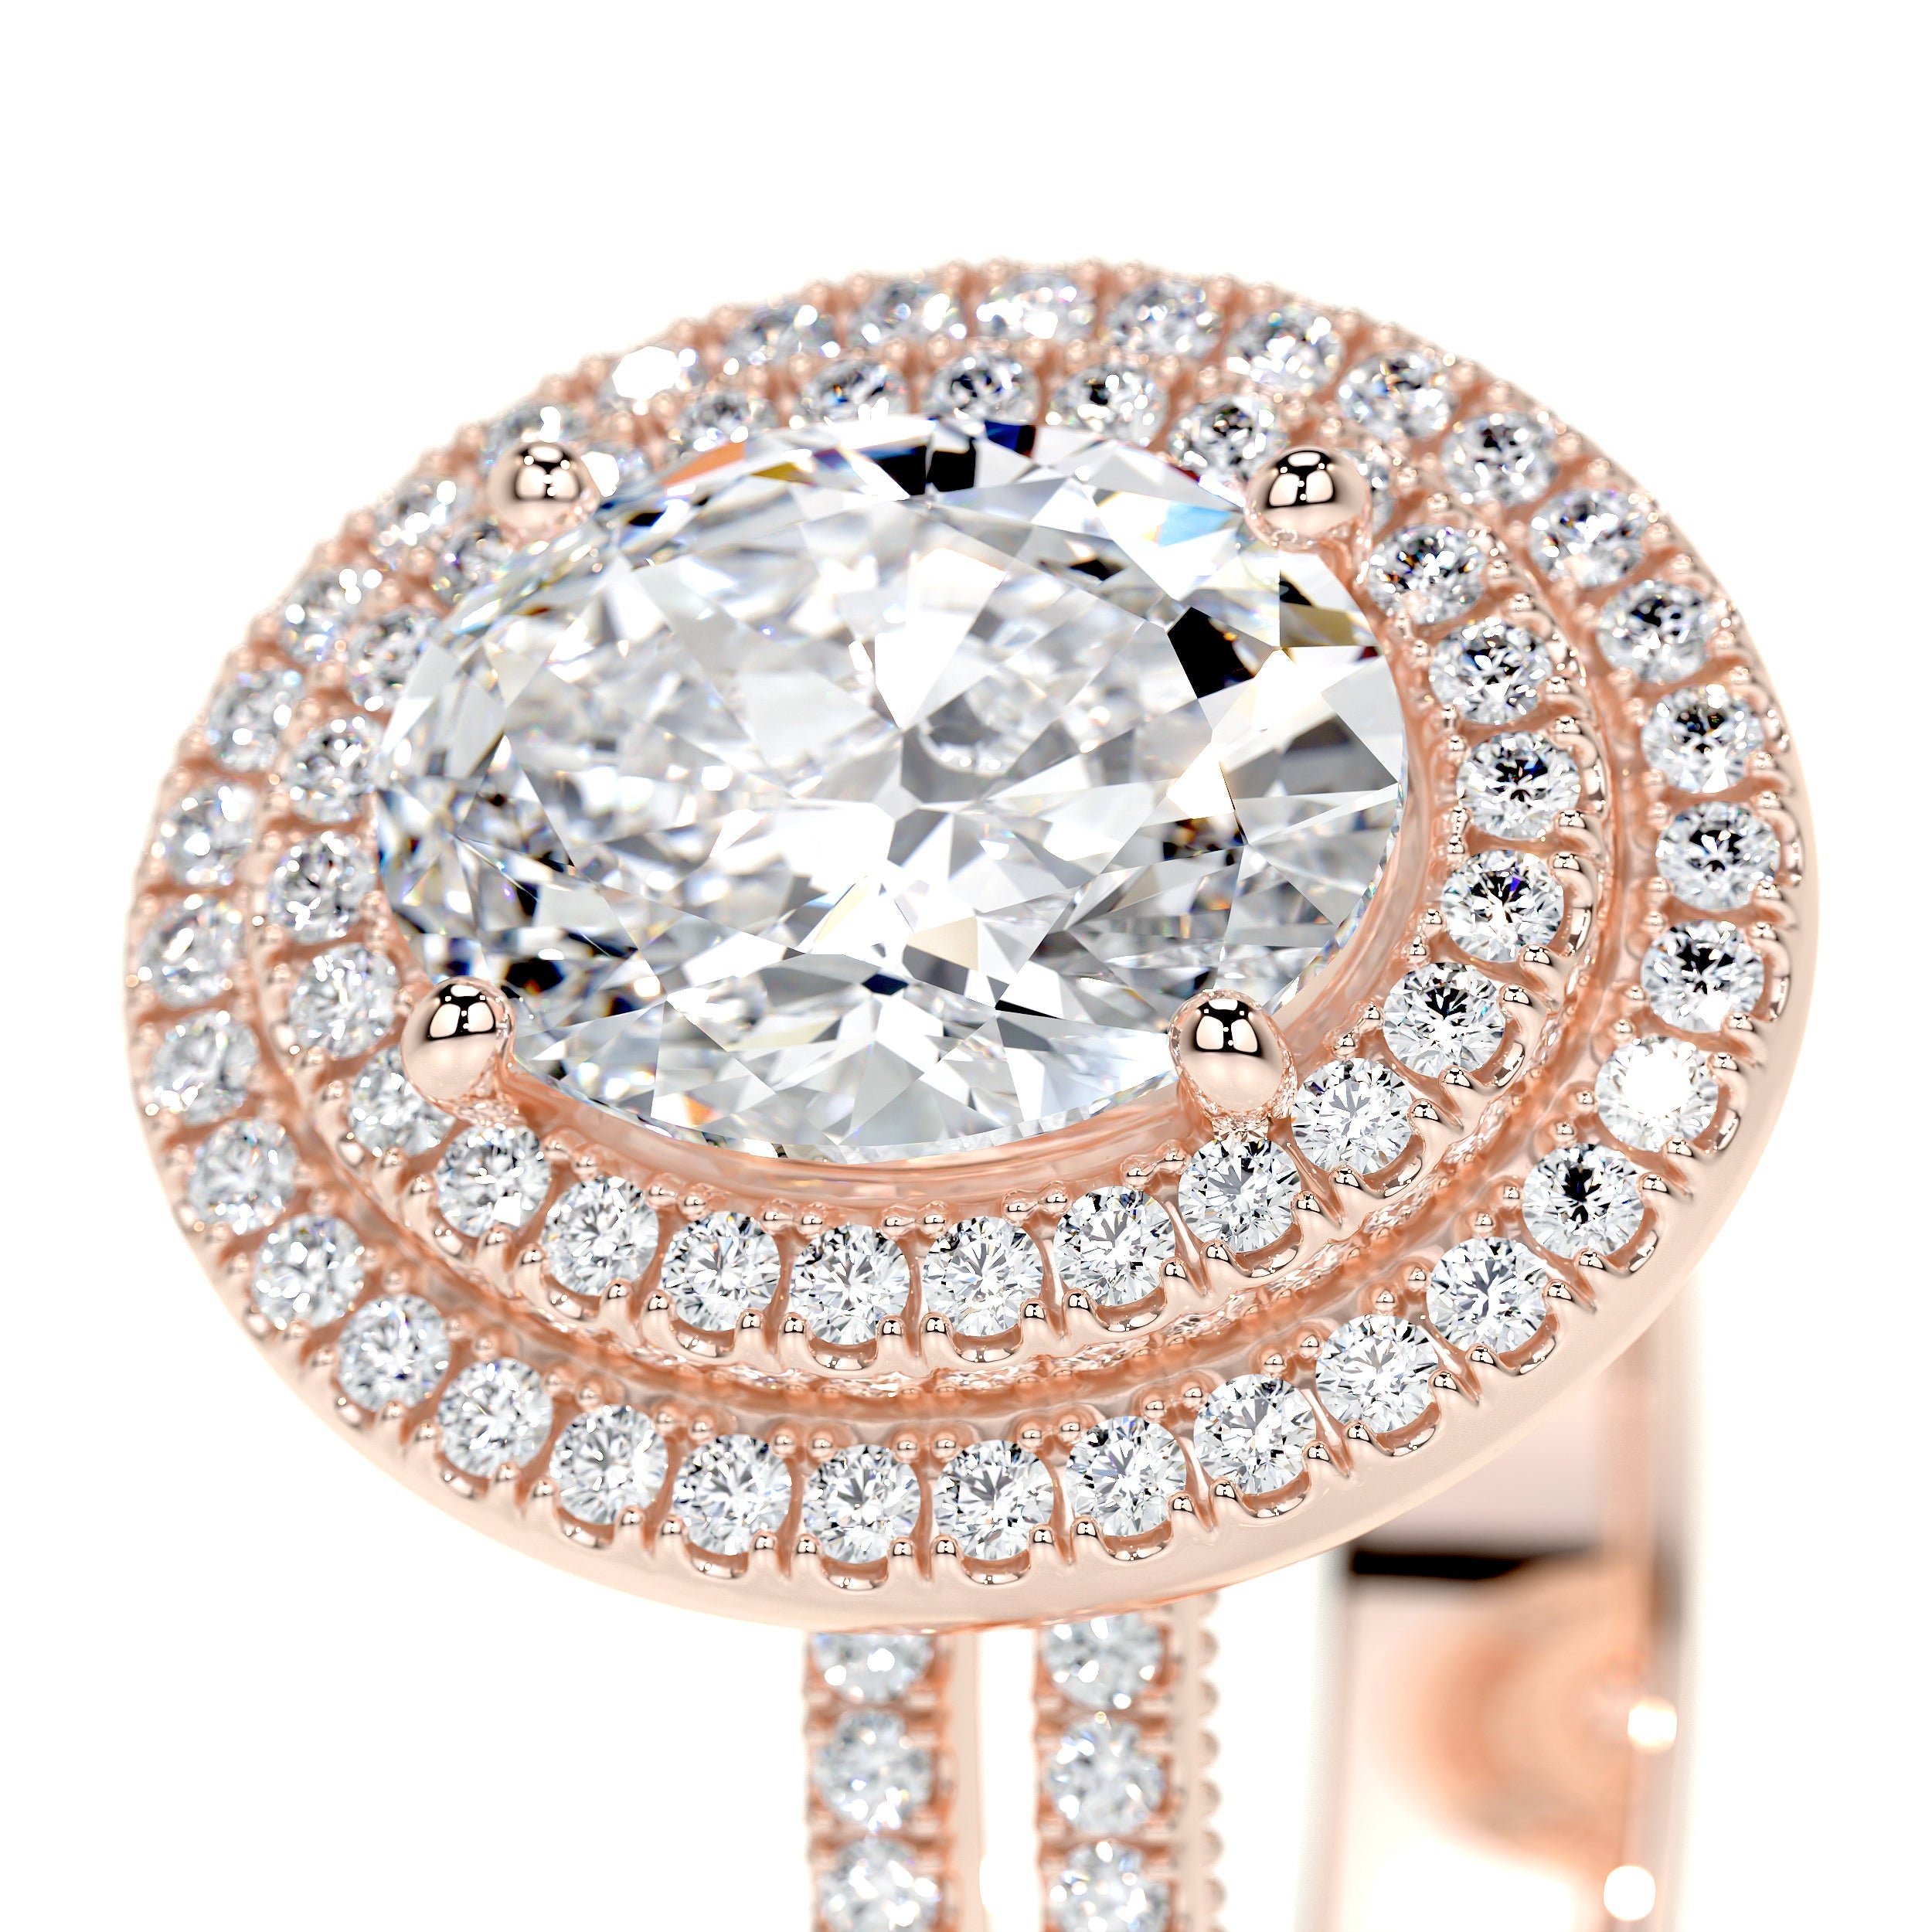 Willa Lab Grown Diamond Ring   (3 Carat) -14K Rose Gold